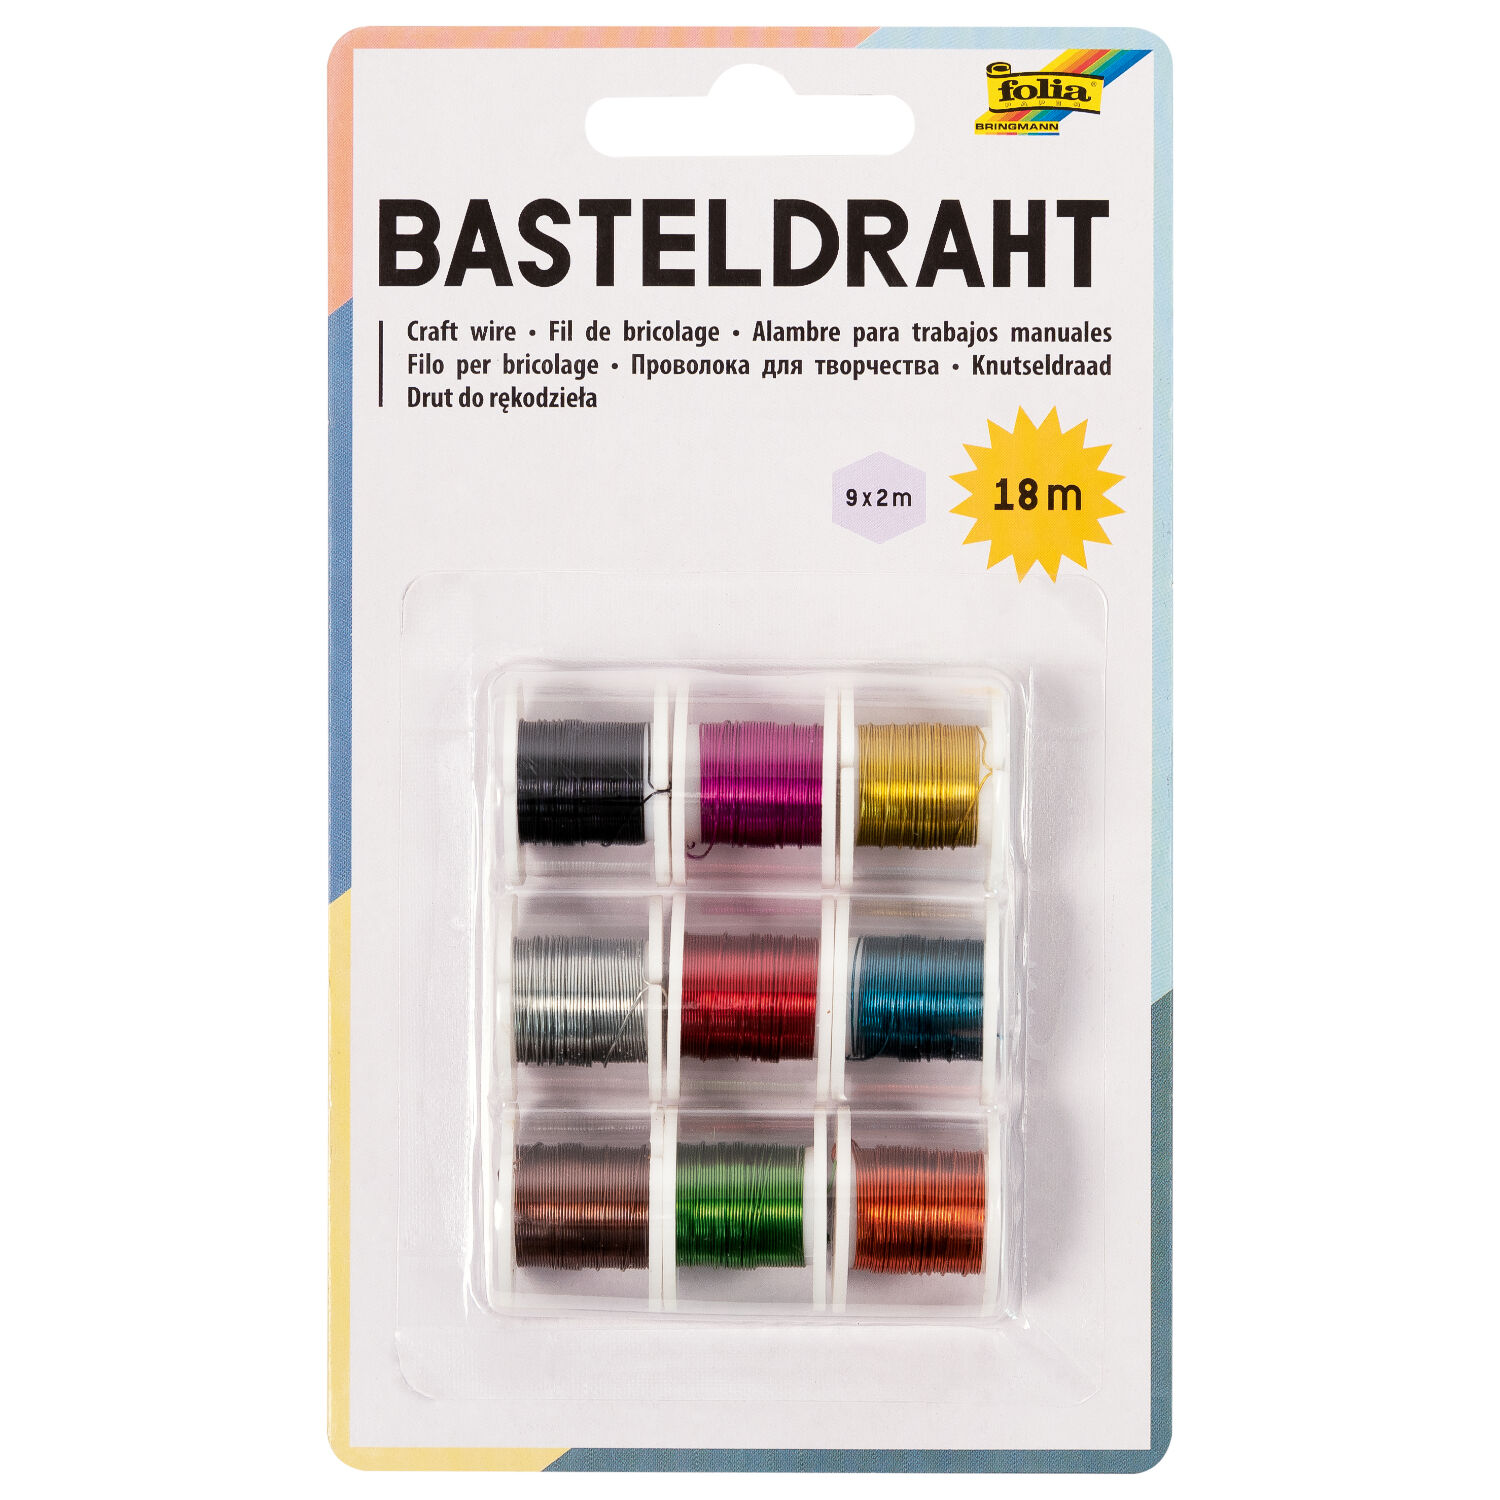 Basteldraht-Set, 9 Spulen  2 m, farbig sortiert